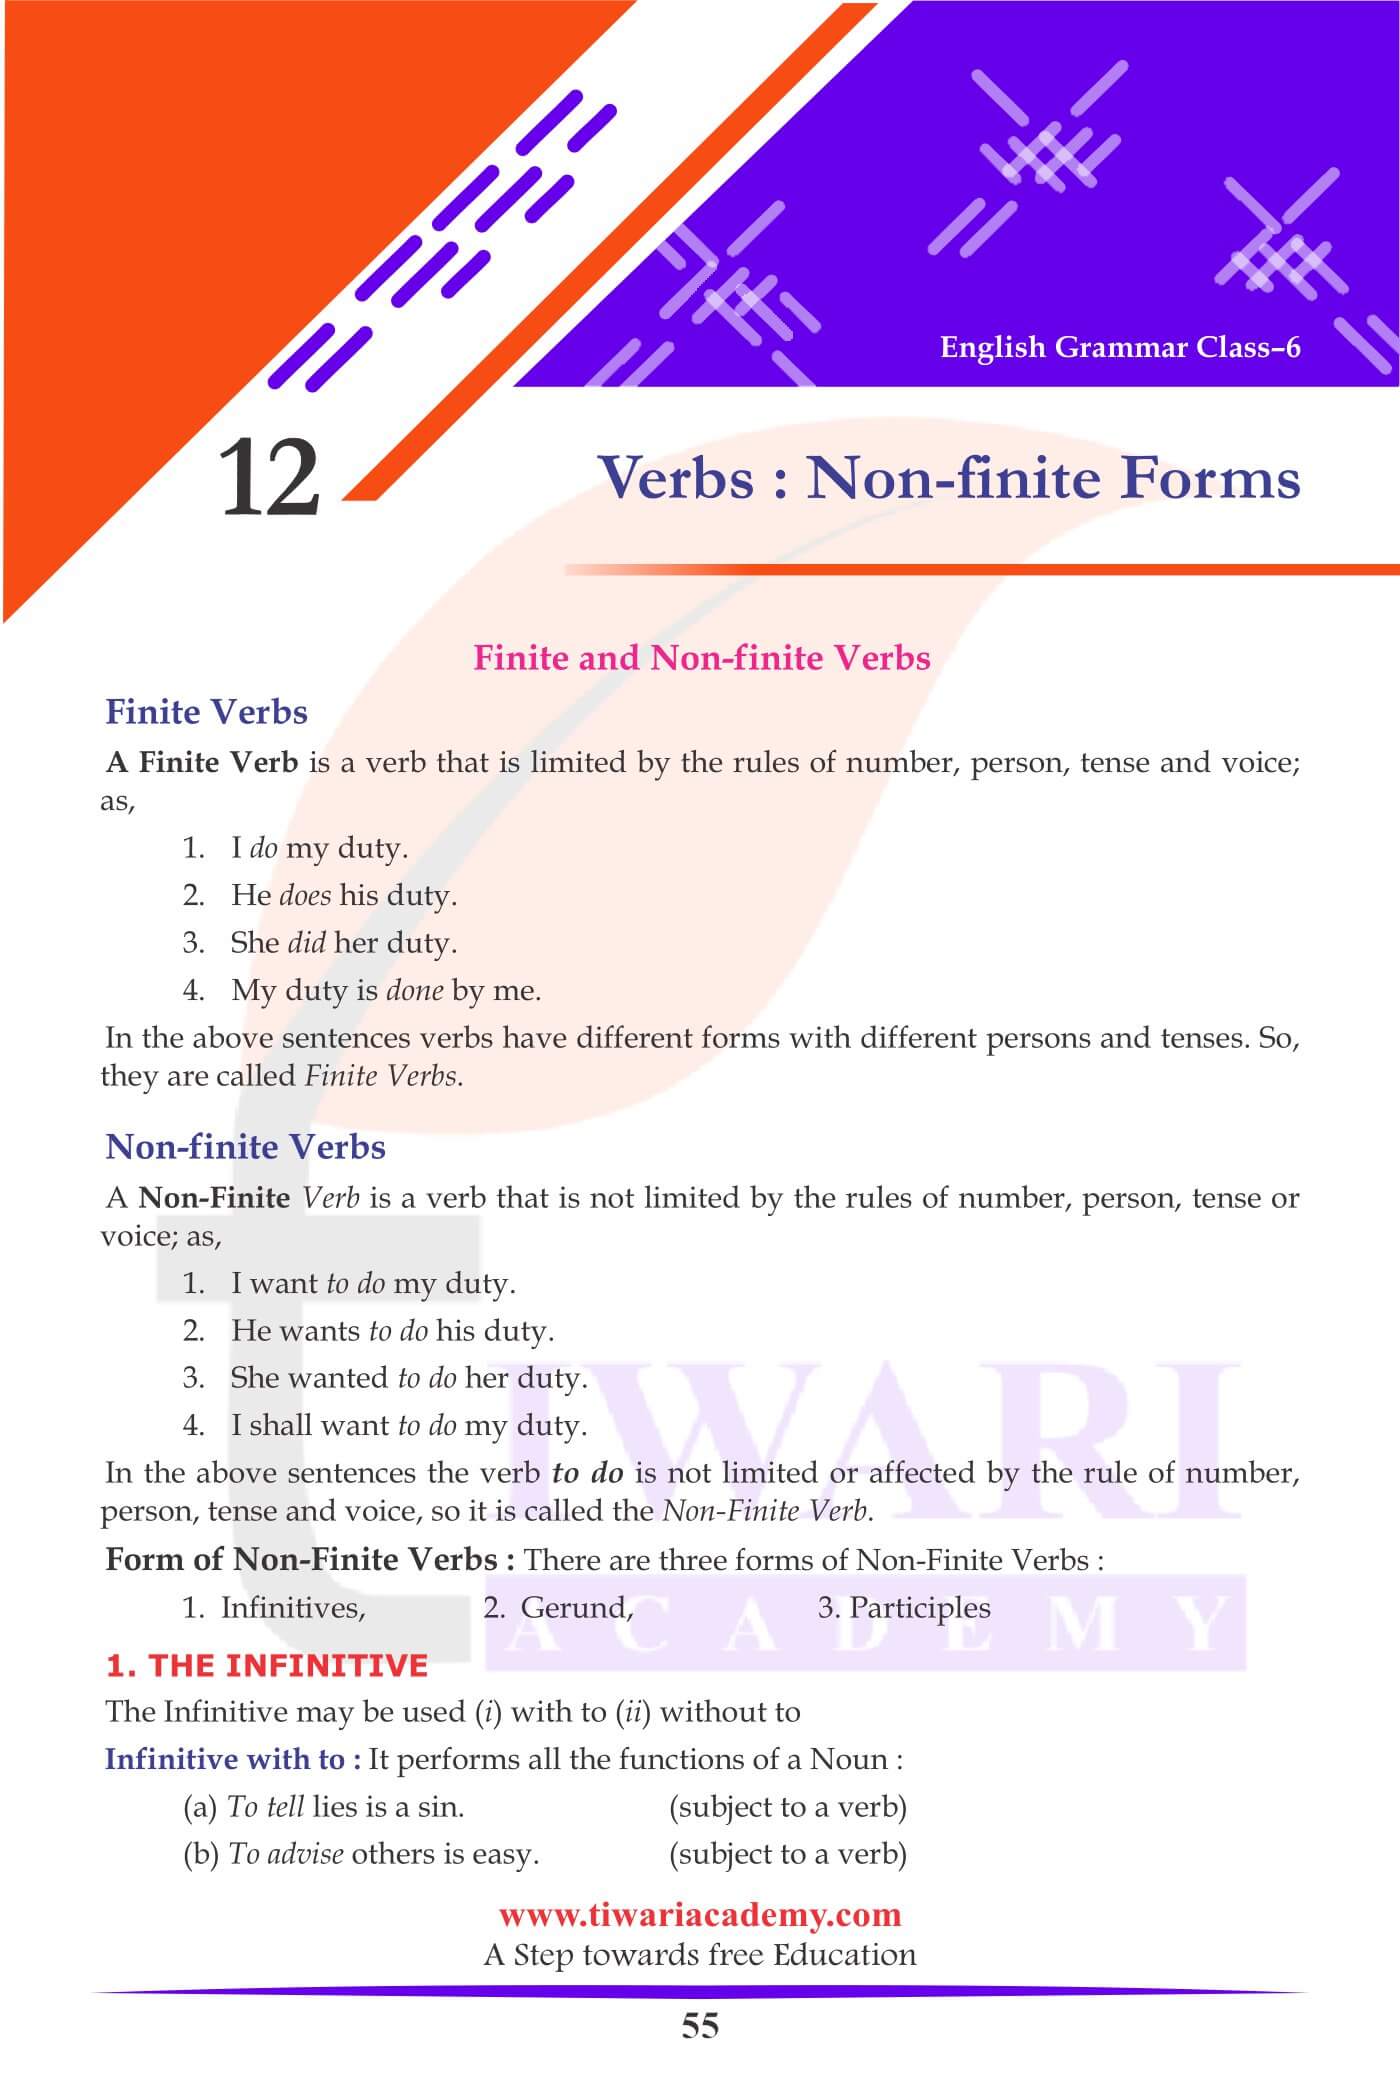 Class 6 English Grammar Chapter 12 Verbs Finite, Non-finite Forms